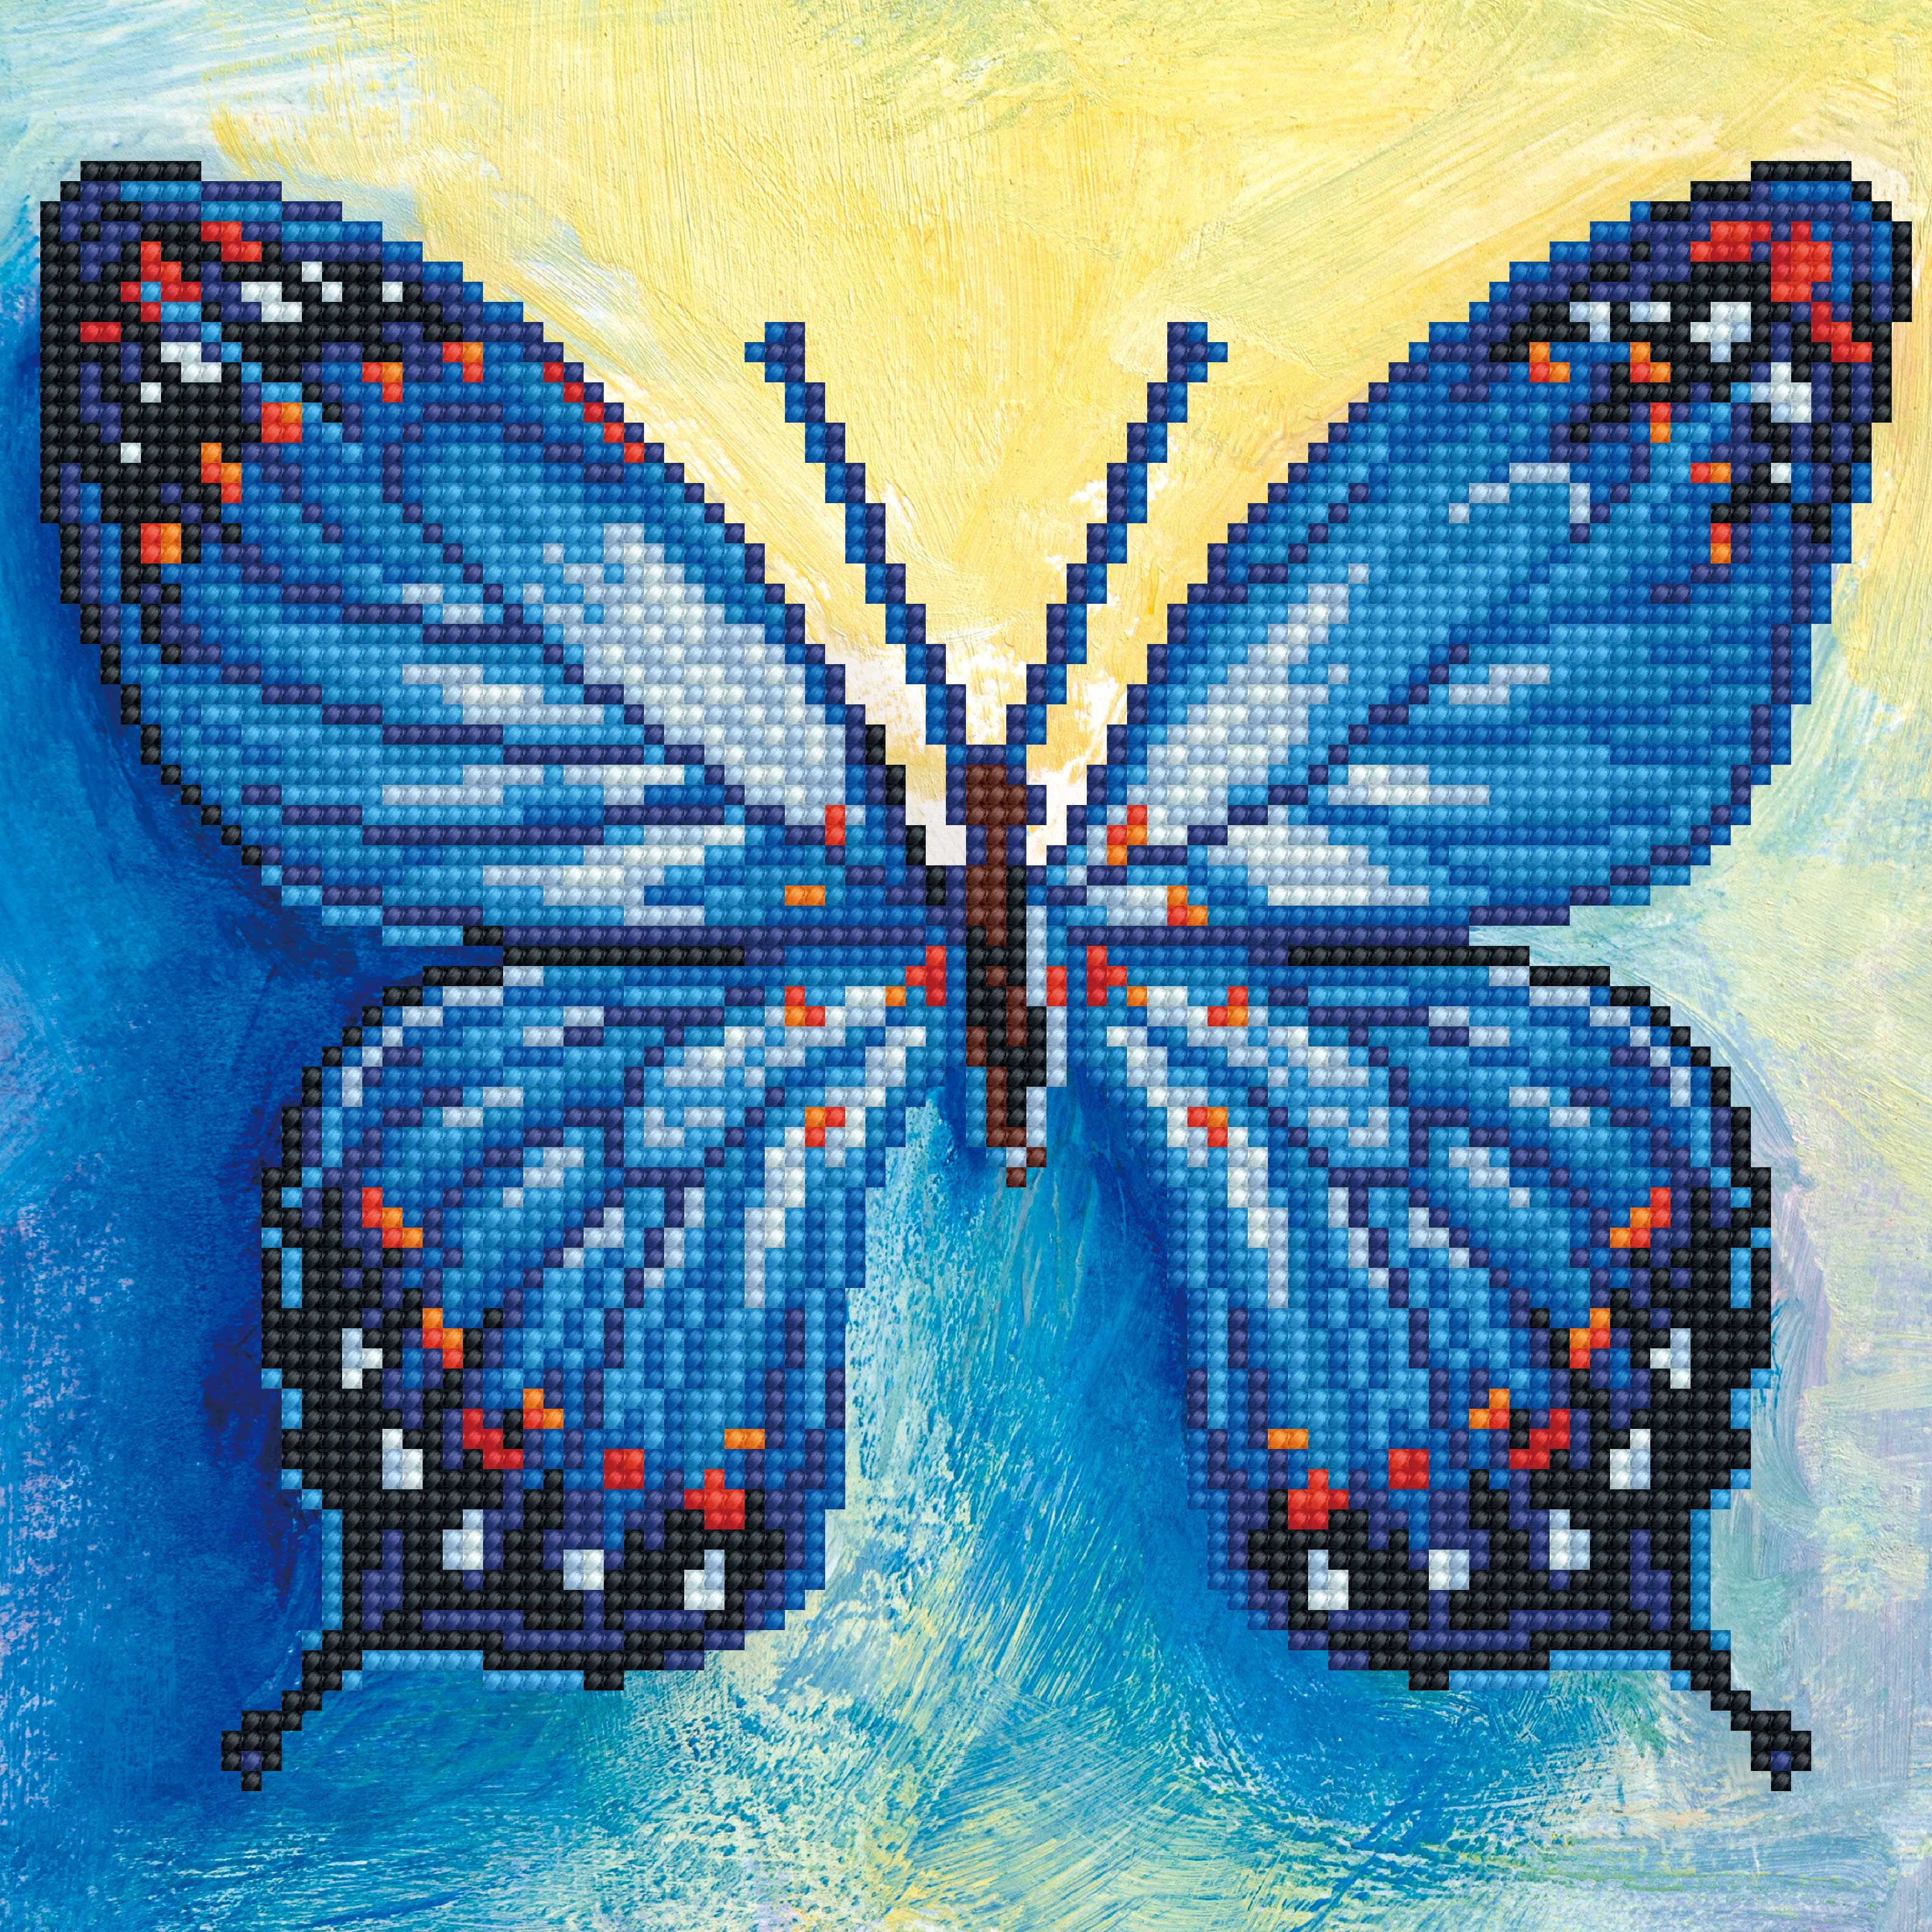 DIAMOND DOTZ - Butterfly Art - DD9.073